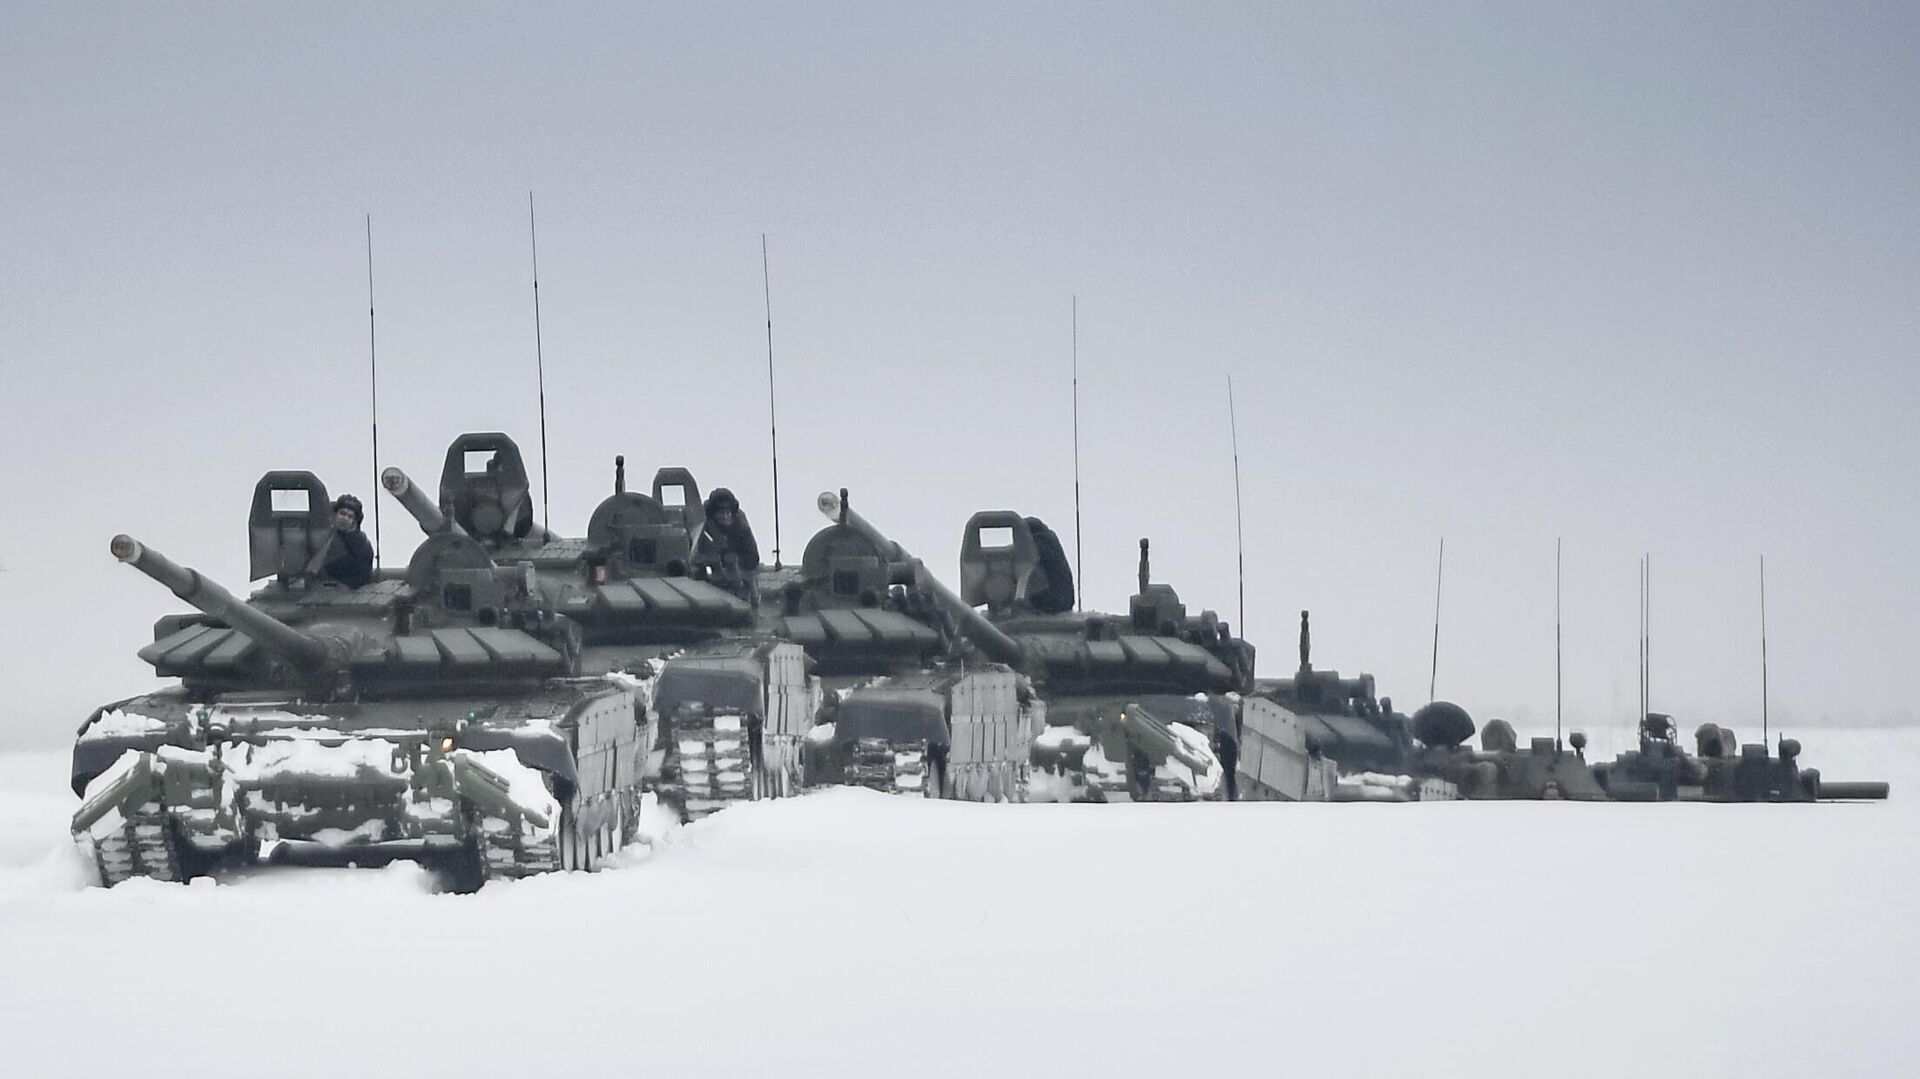 Колонна танков Т-72Б3 во время военных учений  - РИА Новости, 1920, 23.01.2022